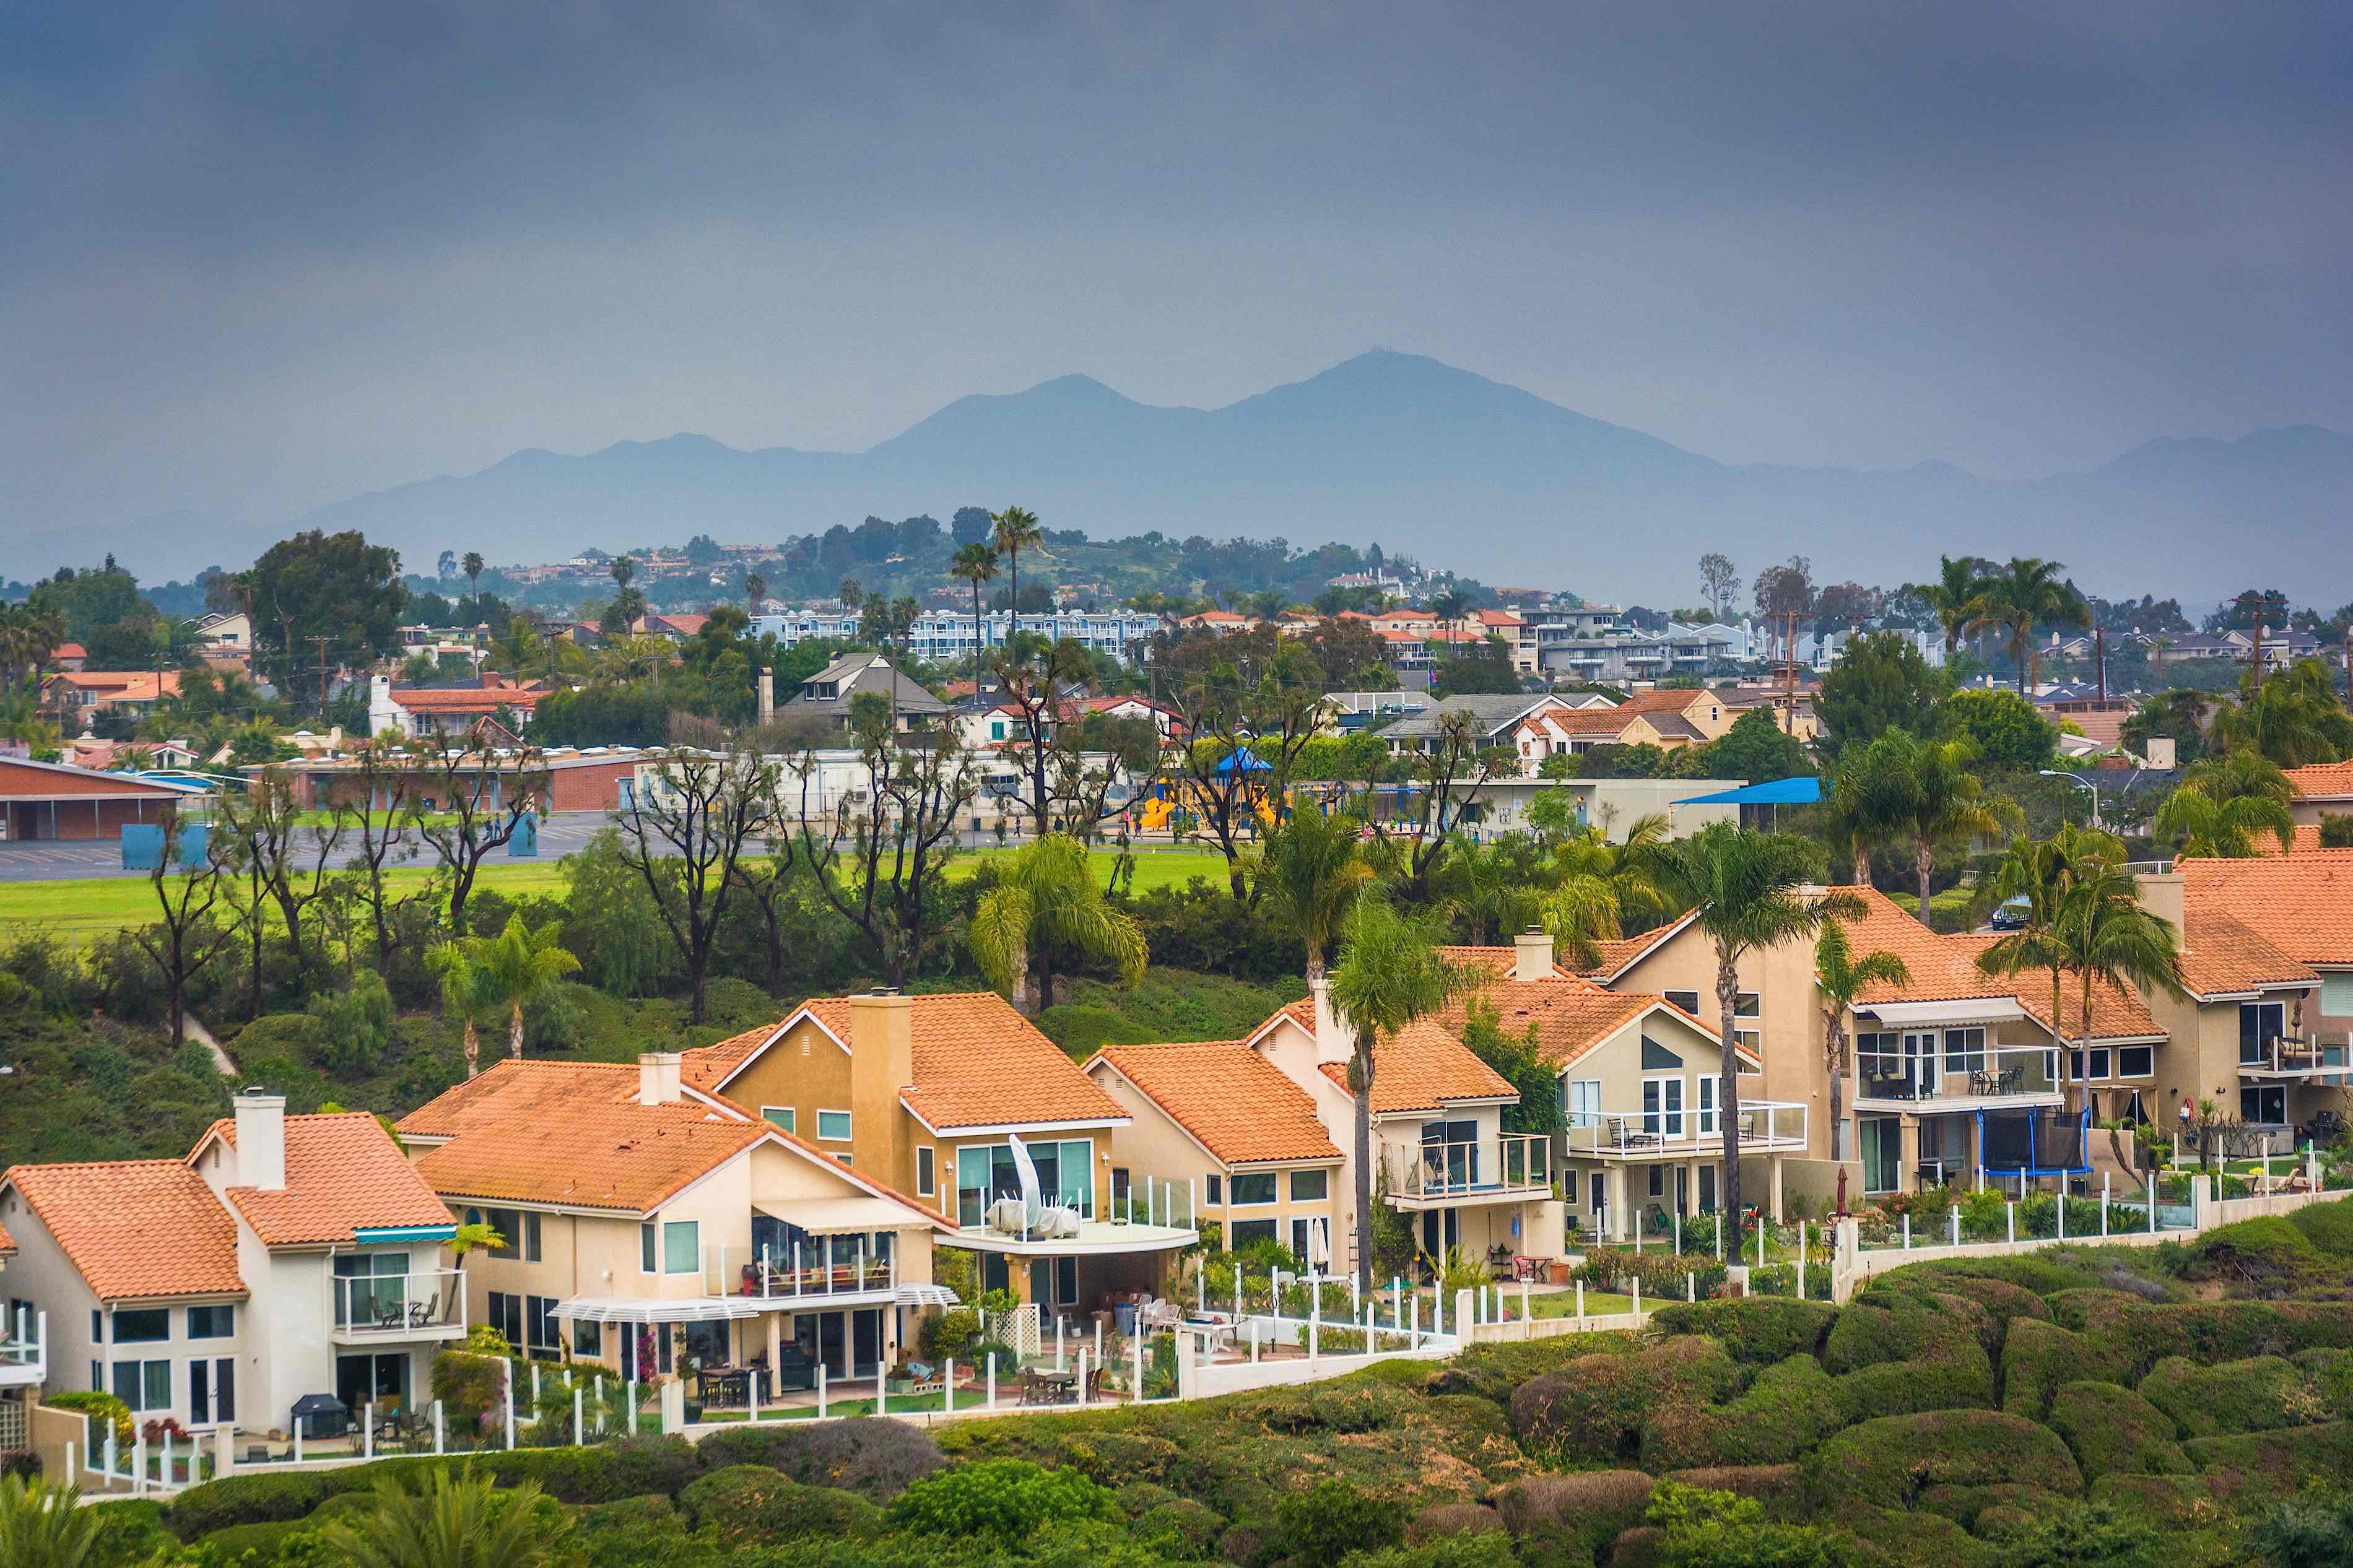 View of Orange County neighborhood